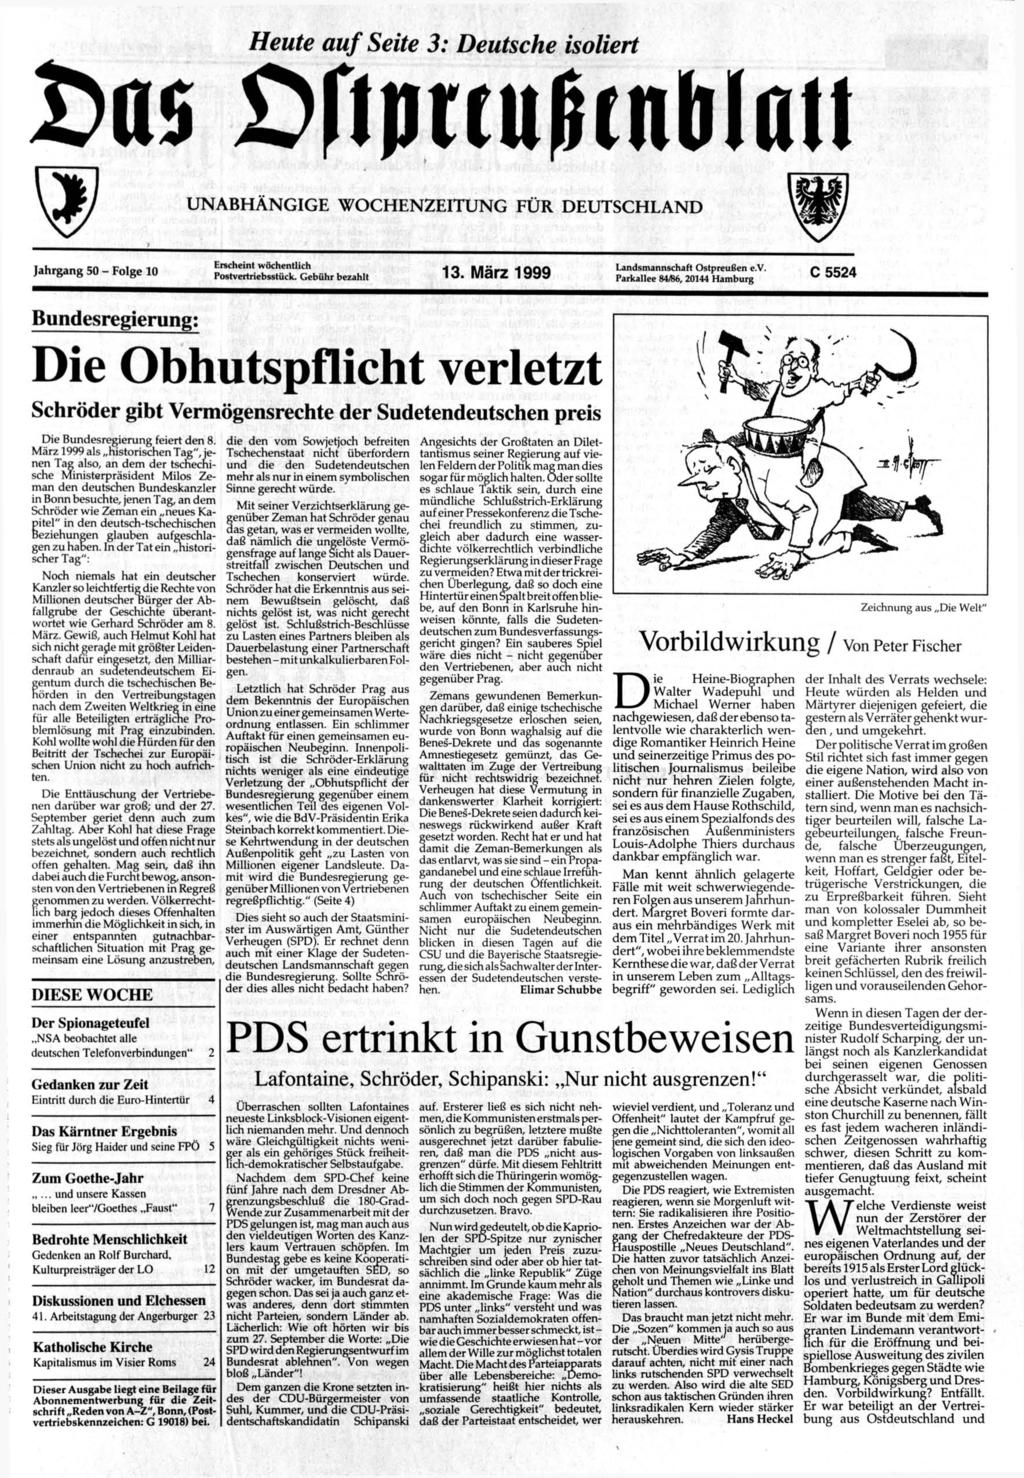 Heute auf Seite 3: Deutsche isoliert ws >rtpttußtnbißu UNABHÄNGIGE WOCHENZEITUNG FÜR DEUTSCHLAND Jahrgang 50 - Folge 10 Erscheint wöchentlich Postvertriebsstück. Gebühr bezahlt 13.